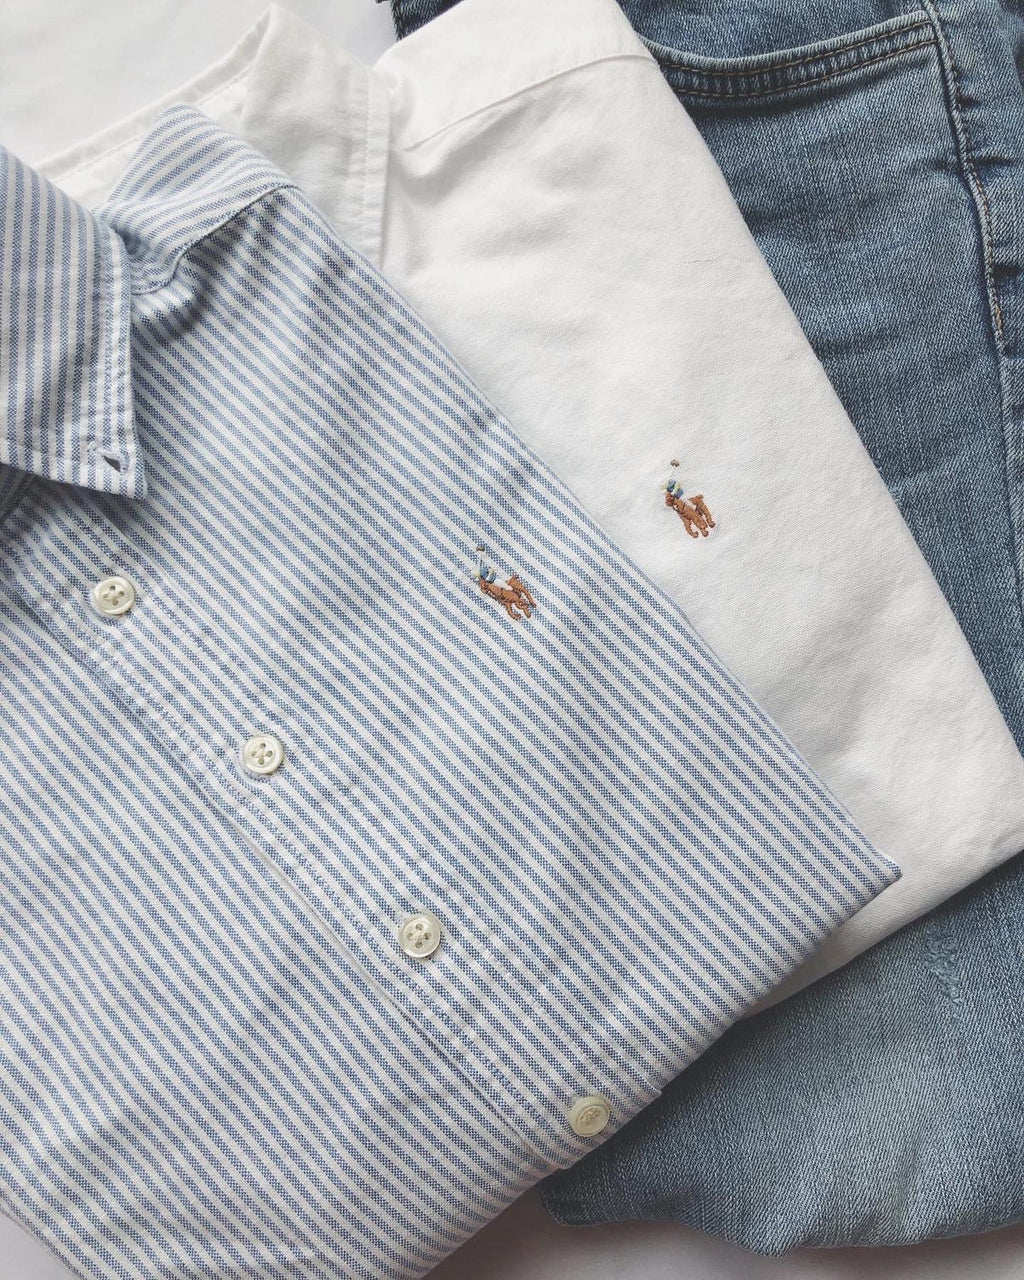 Boys Cotton Oxford Shirt [PRE-ORDER]